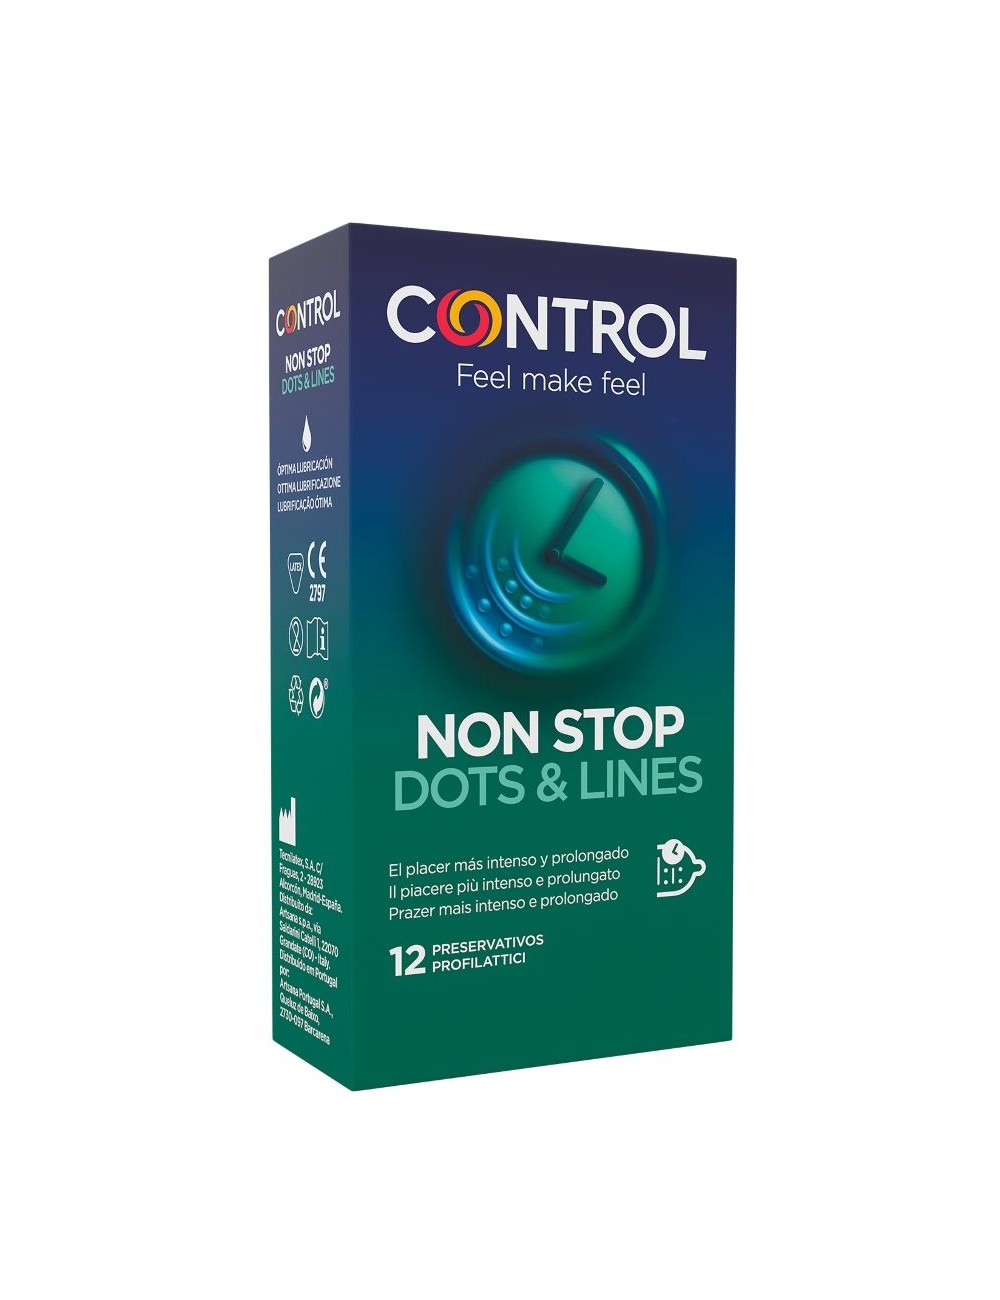 CONTROL NONSTOP DOTS AND LINES CONDOMS 12 UNITS